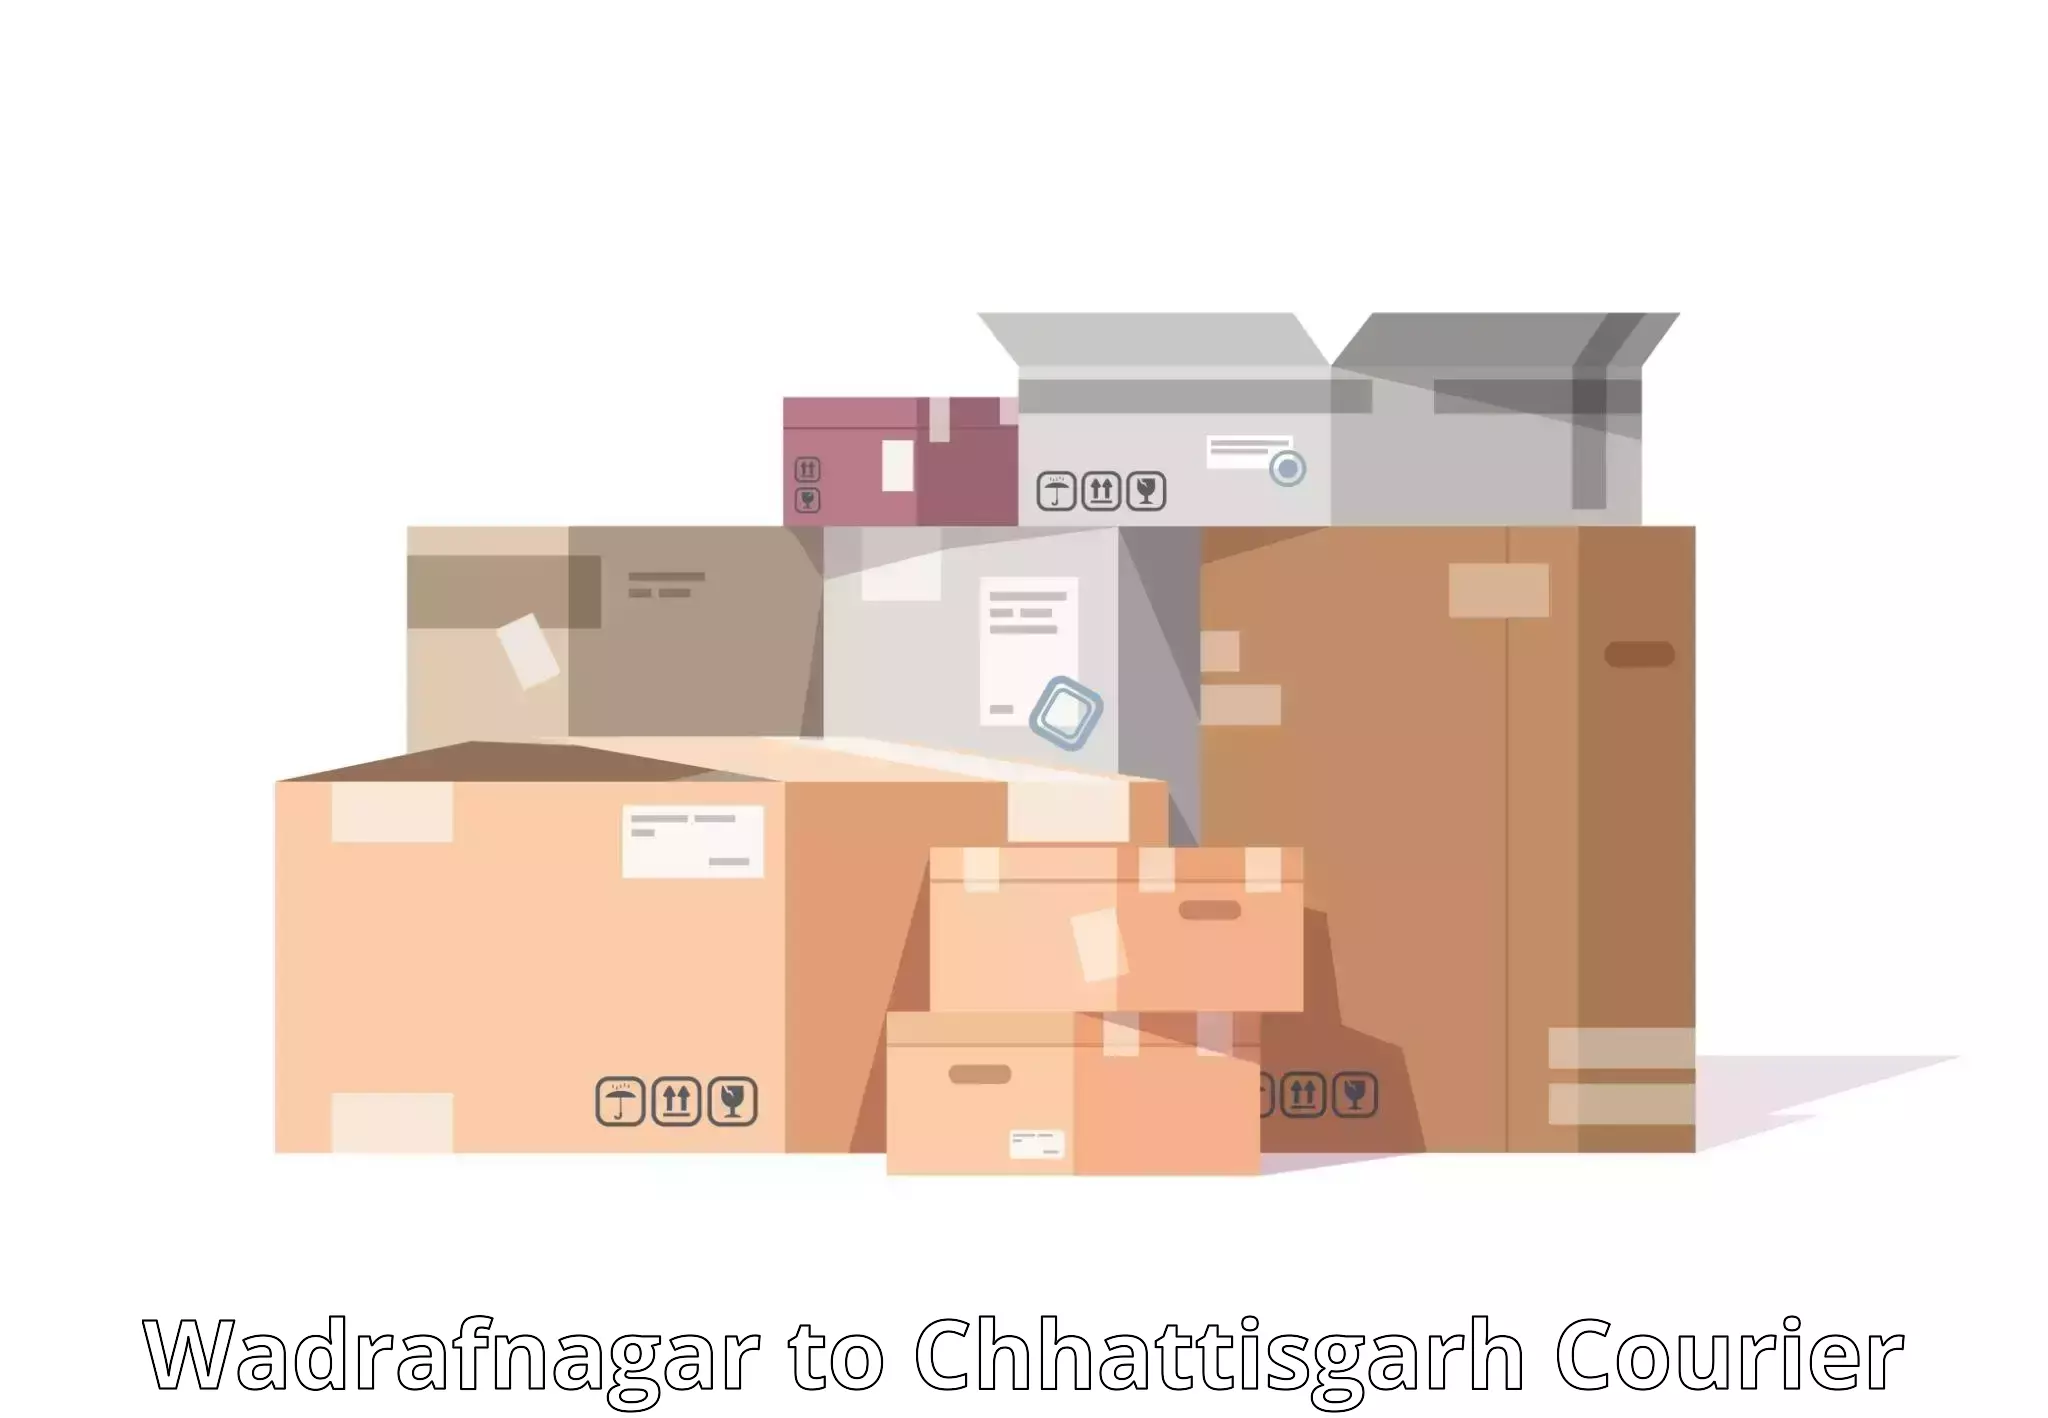 Cargo delivery service Wadrafnagar to Kawardha